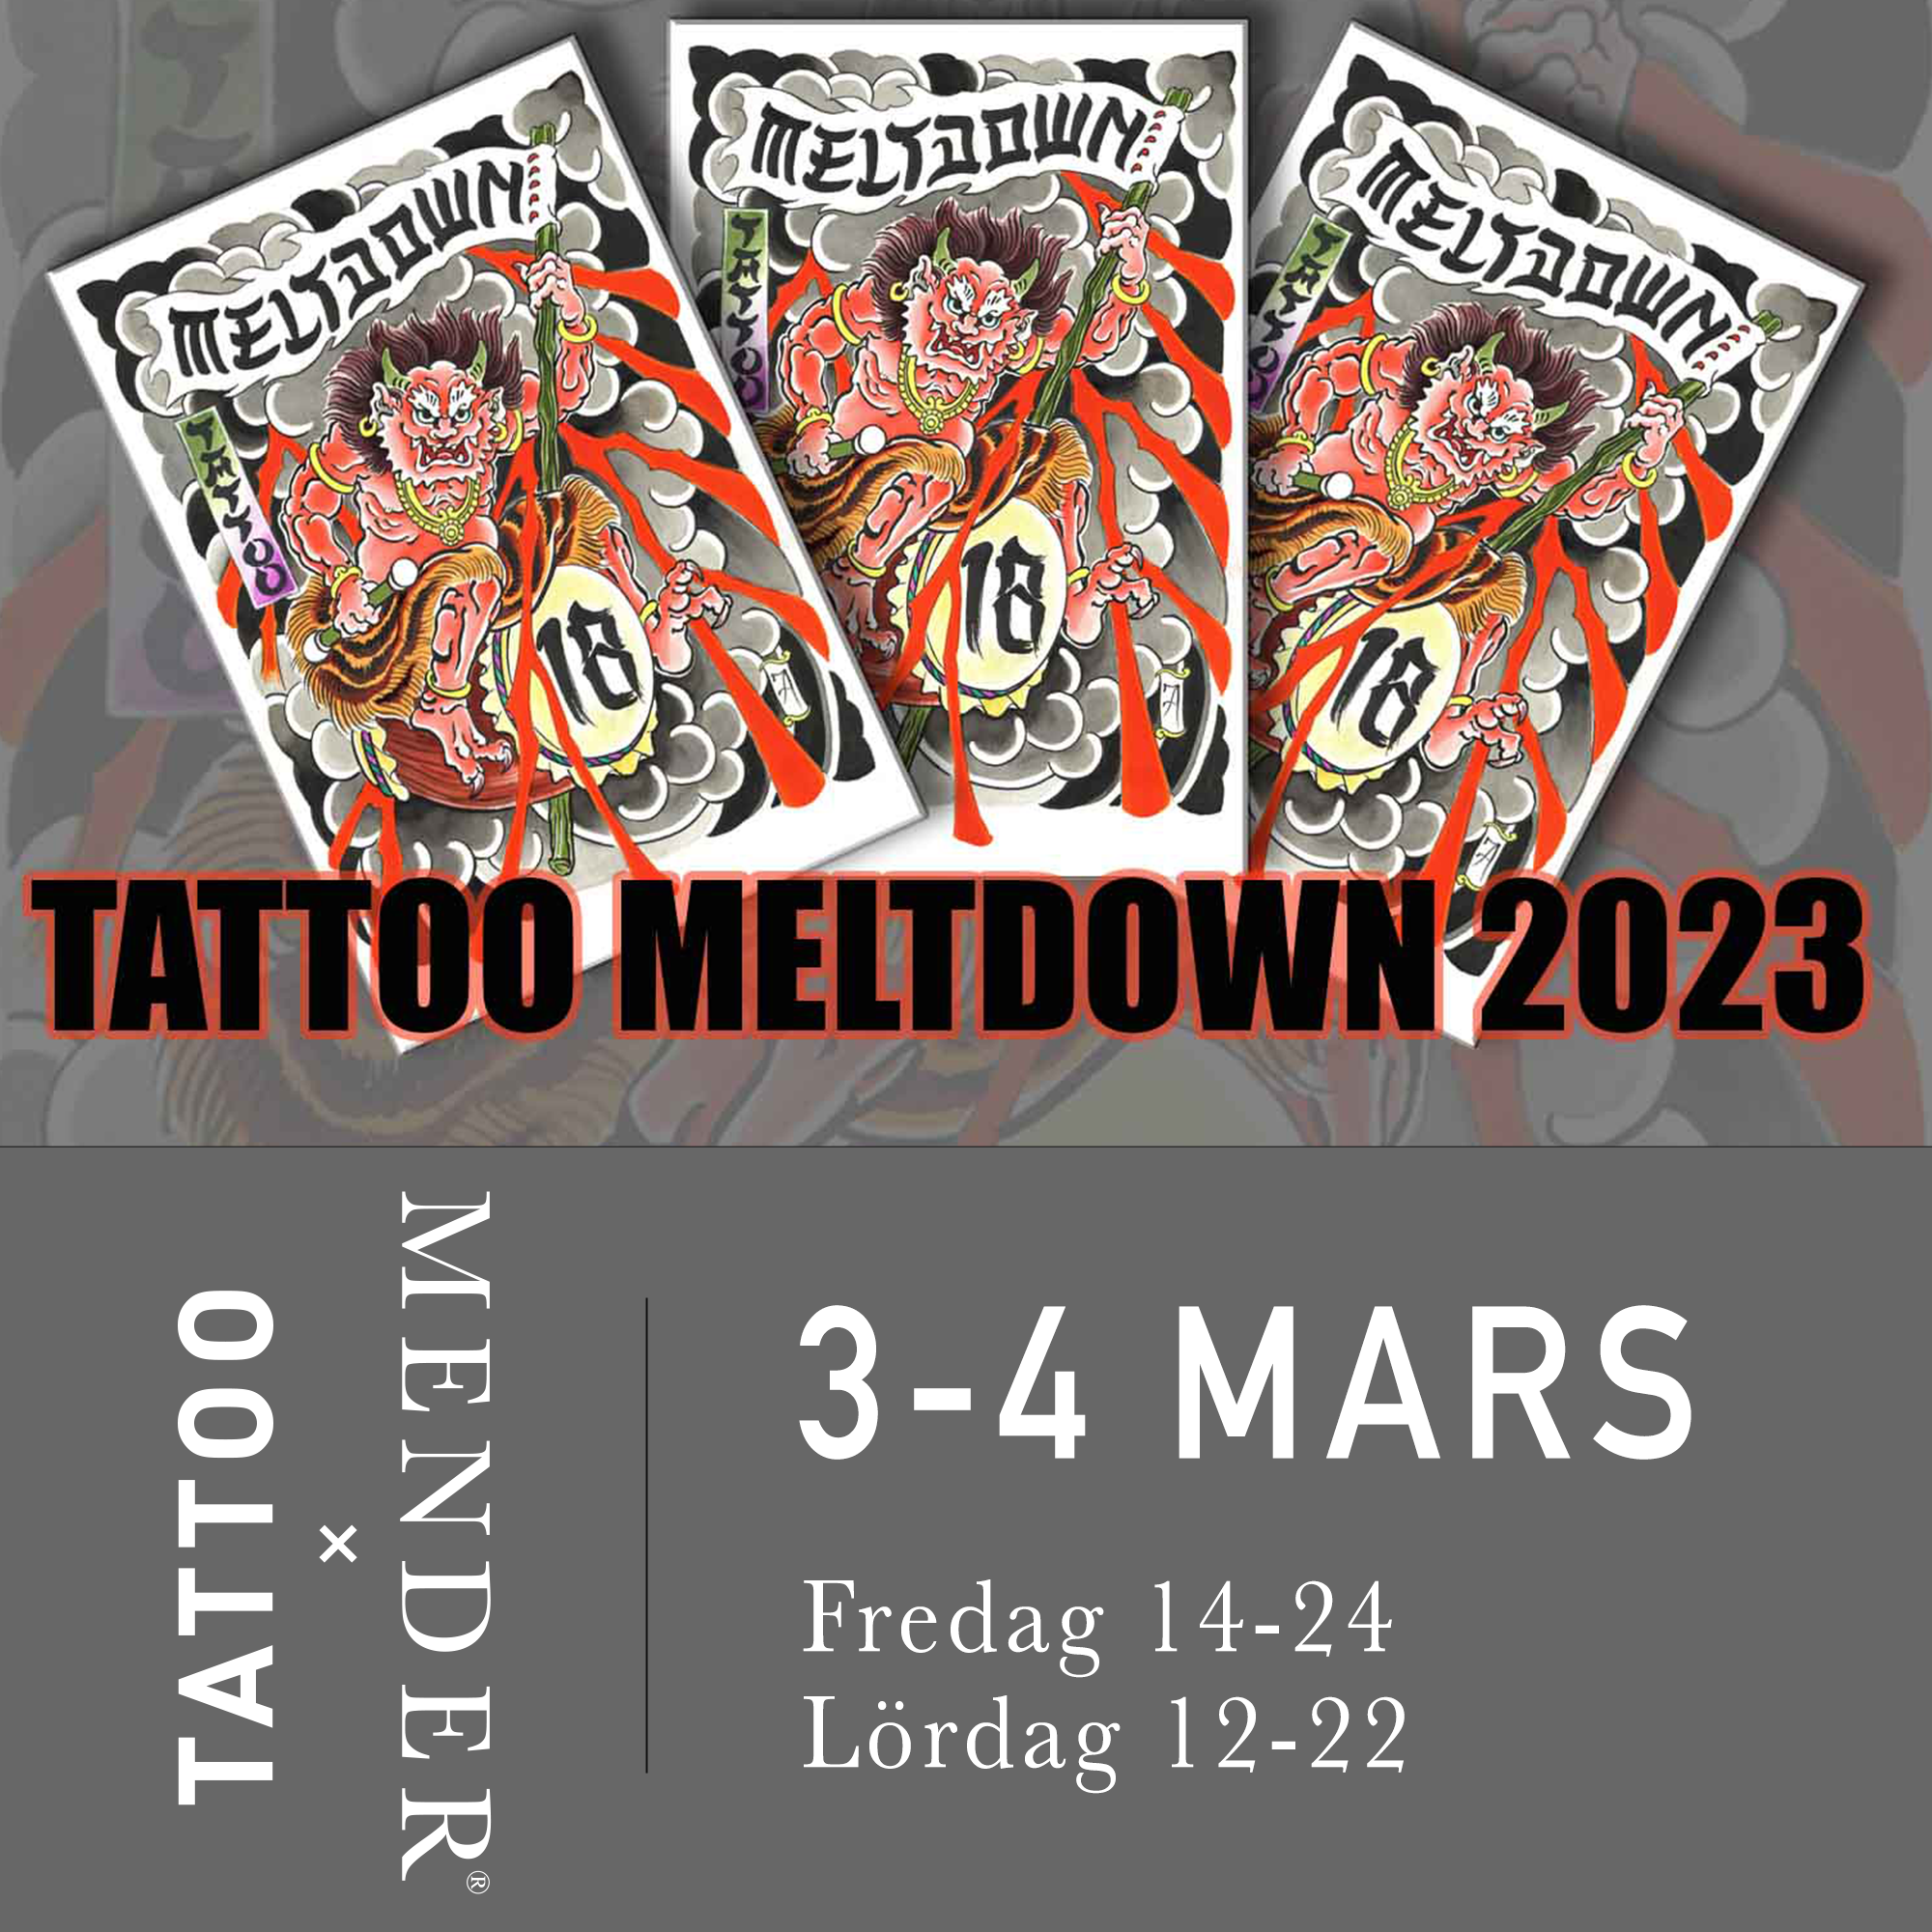 Tattoo Meltdown 2023